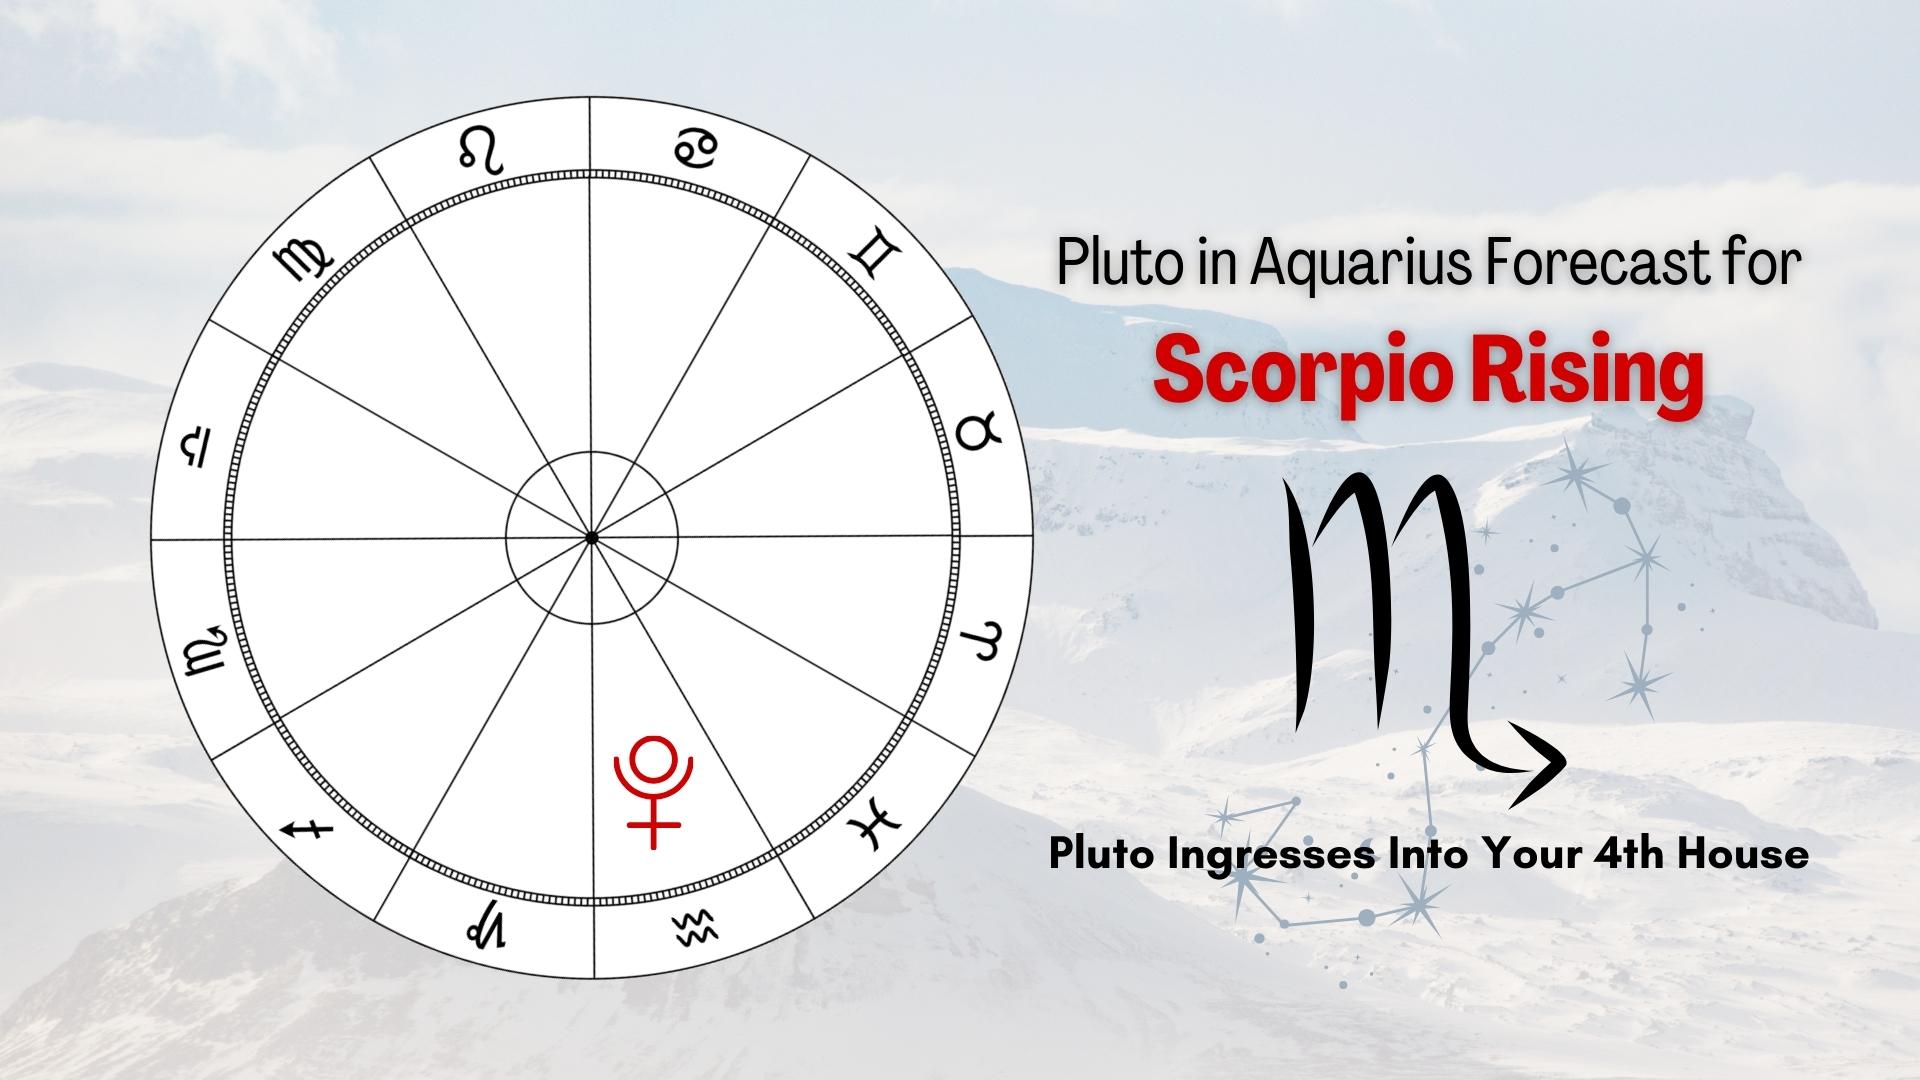 Pluto In Aquarius Forecast for Scorpio Rising